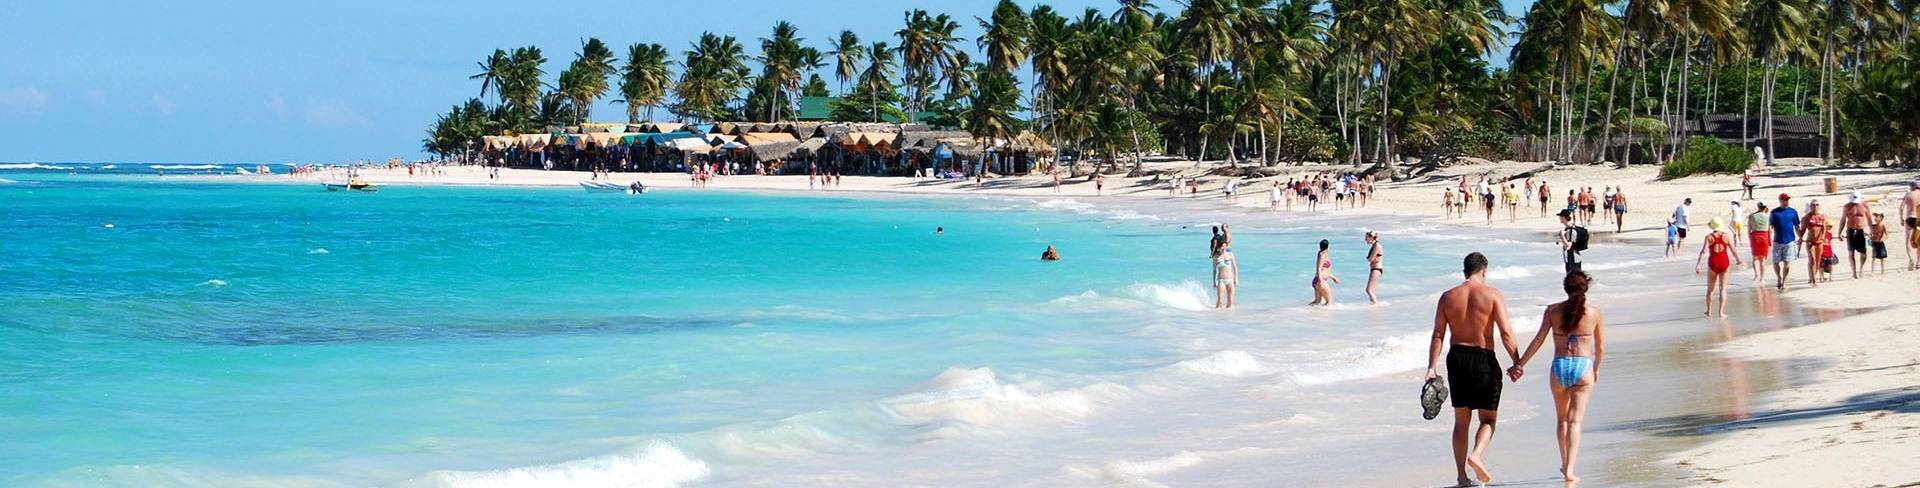 Пунта Кана - пляжный курорт в Доминикане